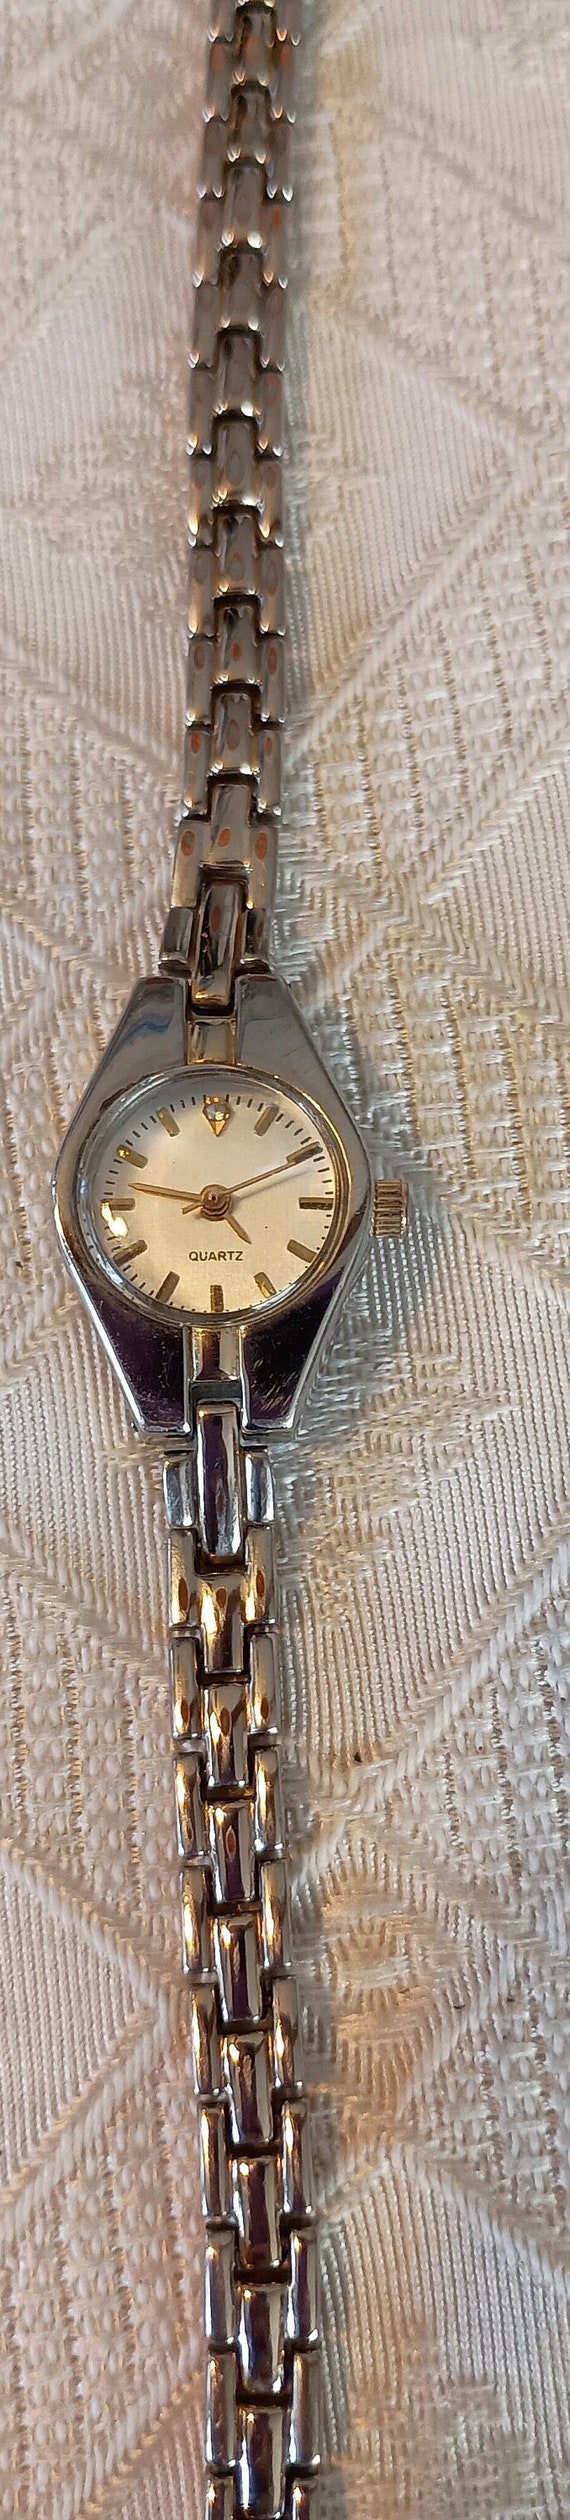 Vintage geneva silver tone watch